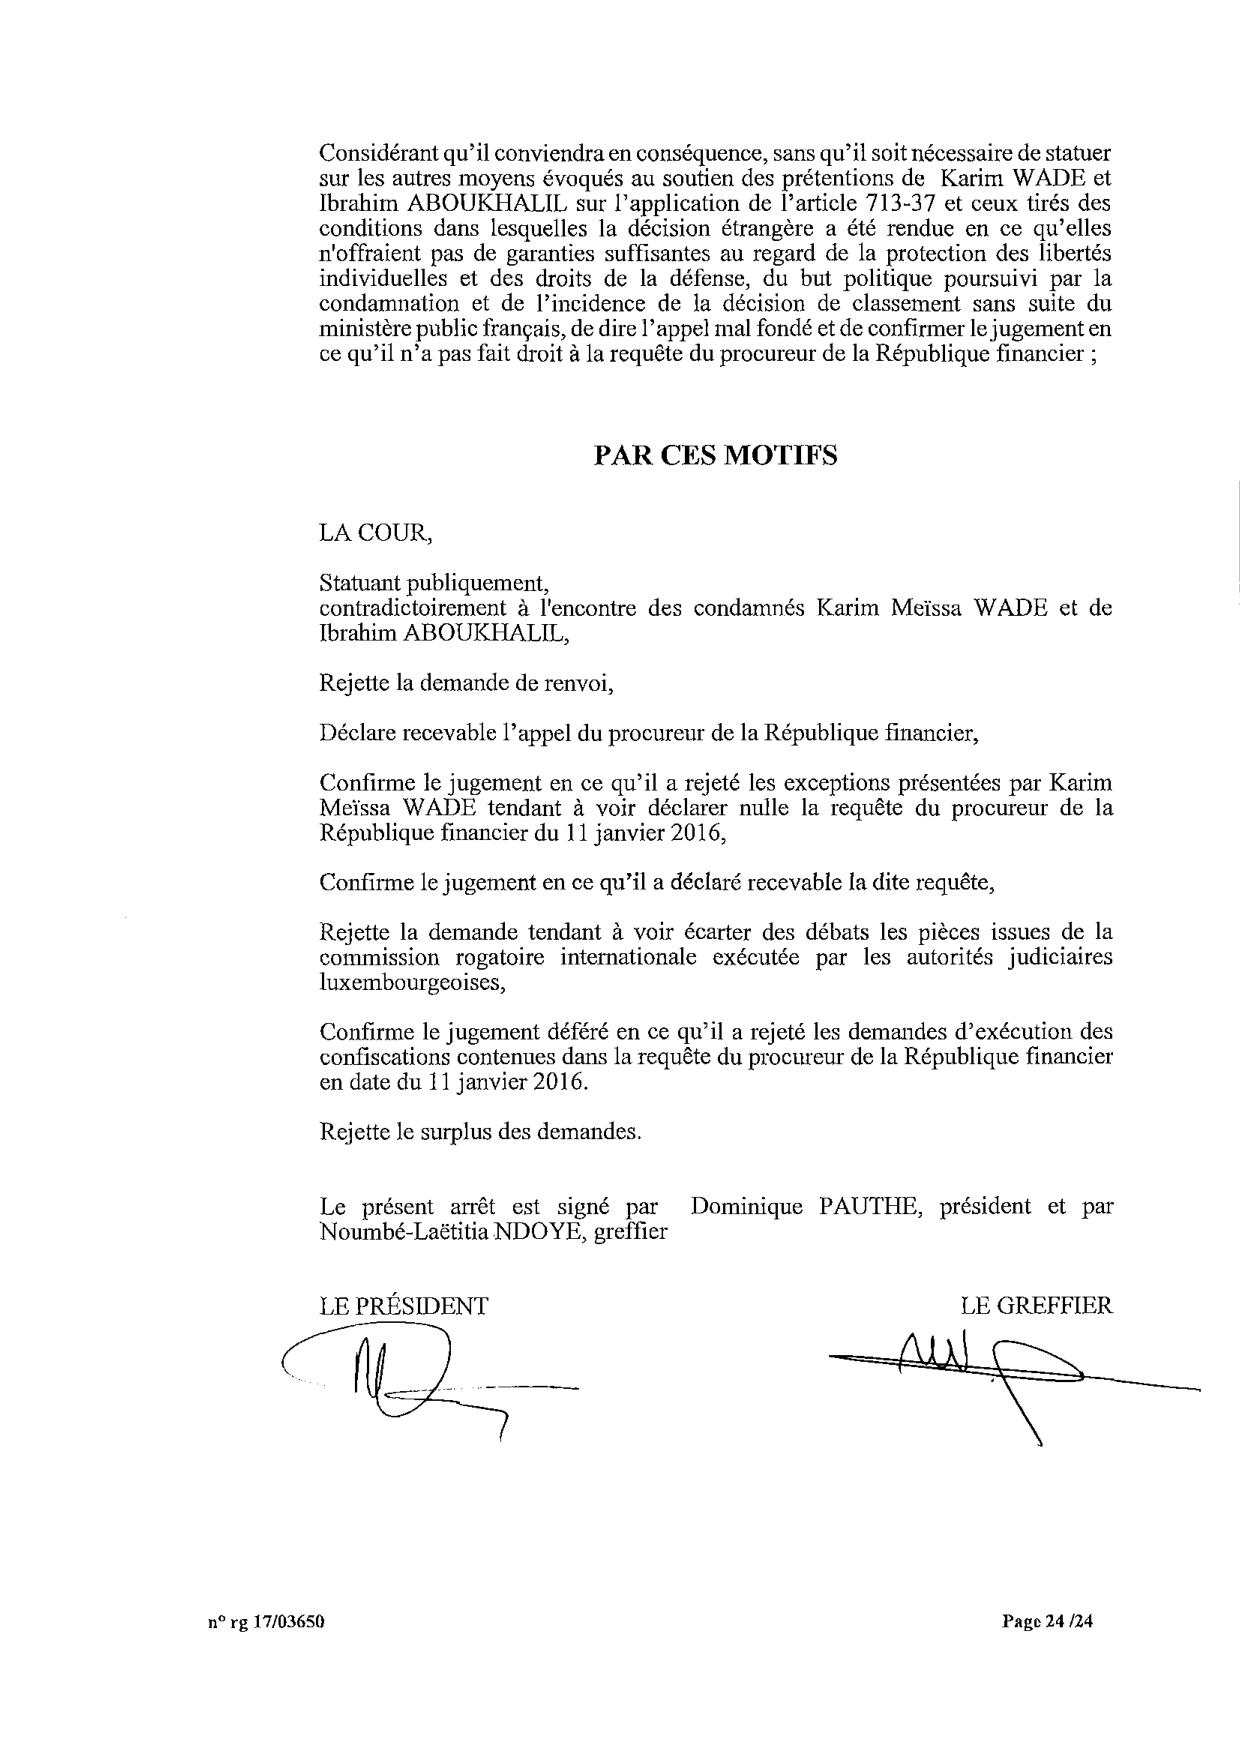 EXCLUSIF Karim Wade : l'intégralité de la décision Cour d'Appel de Paris